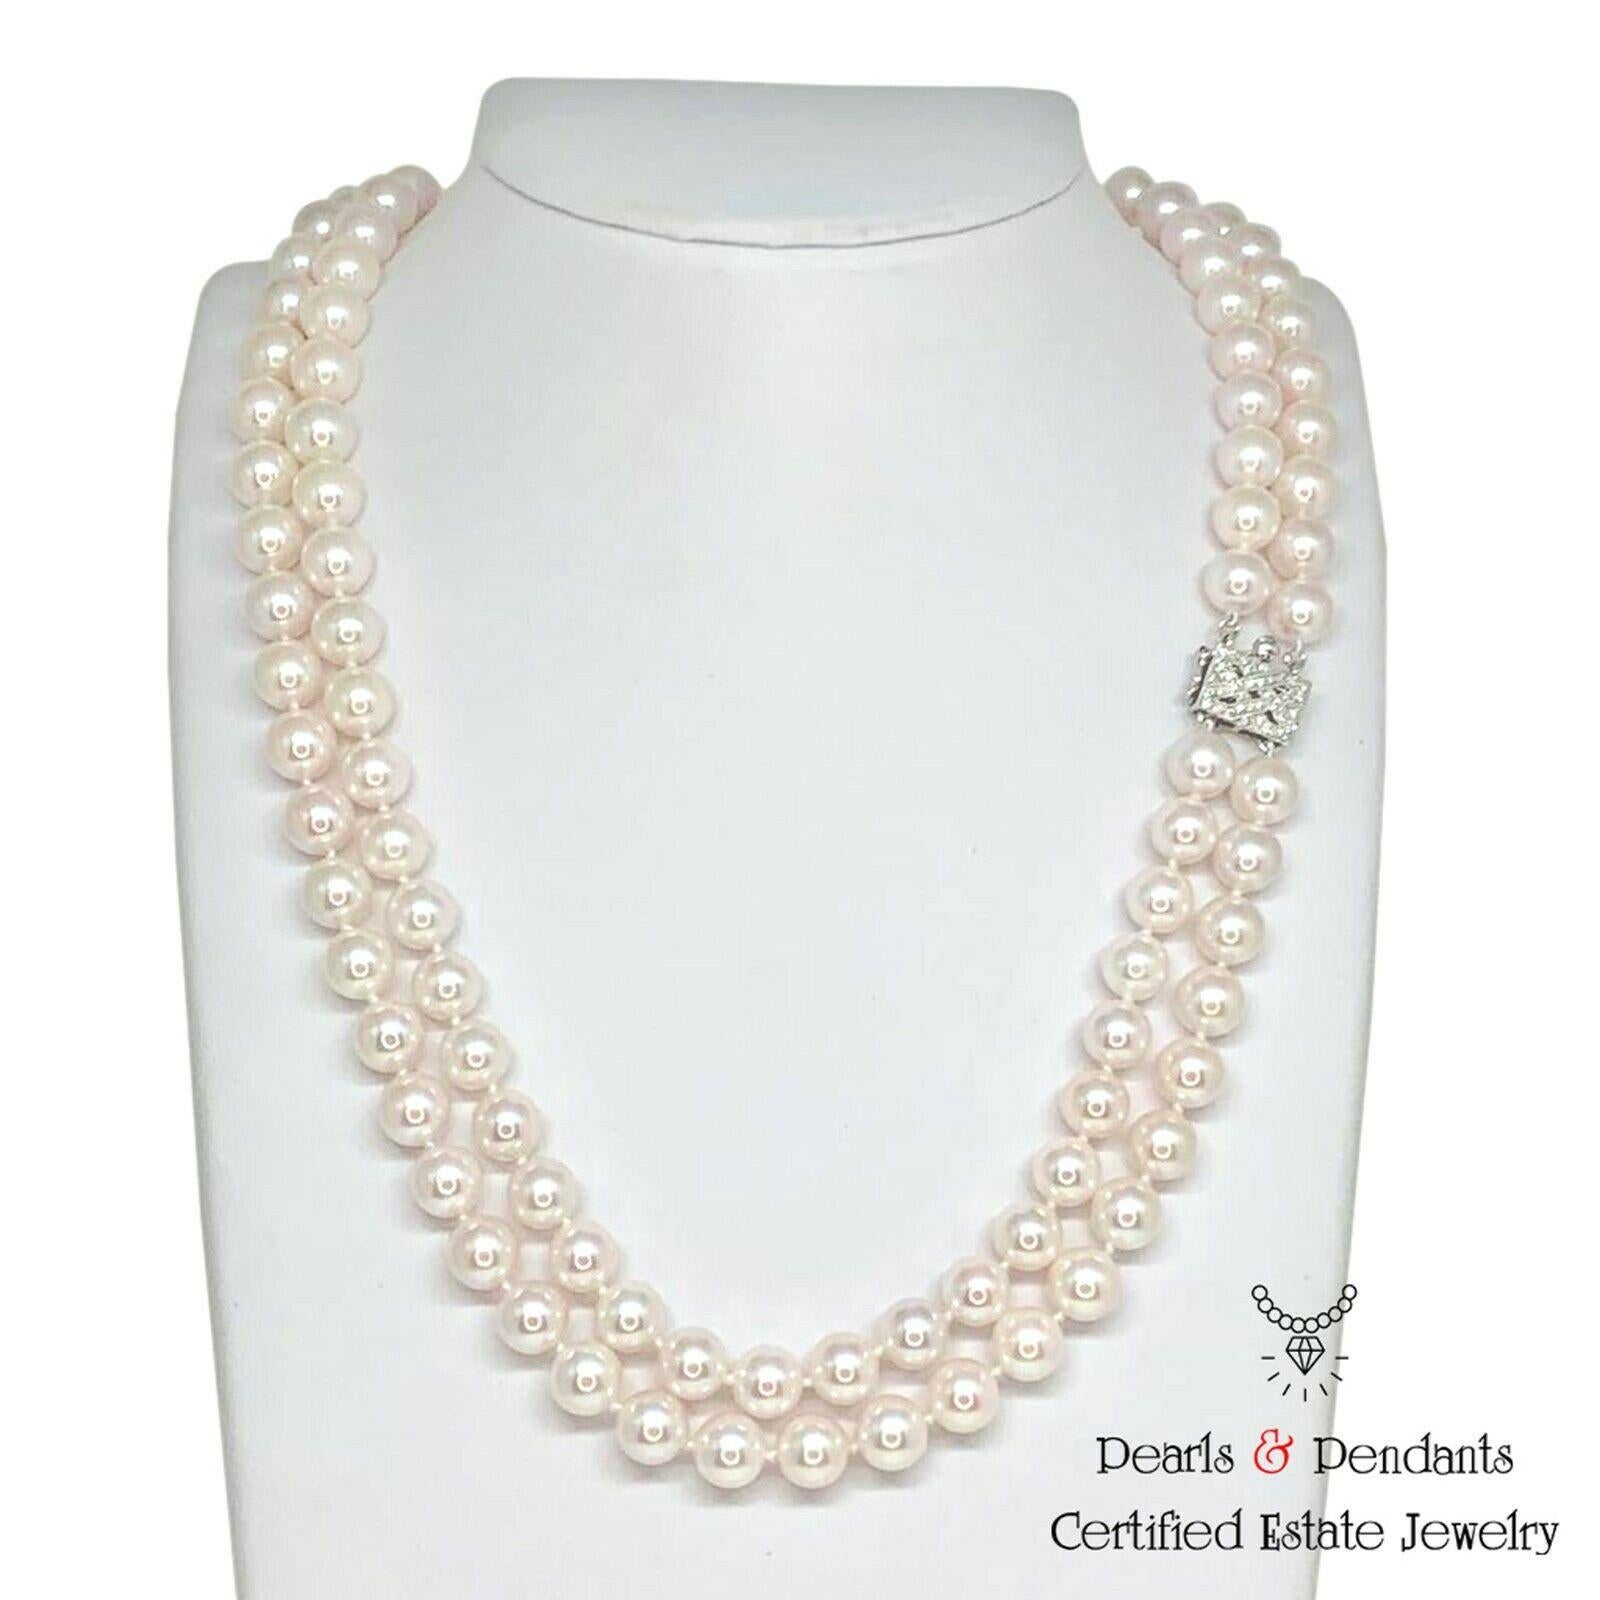 Feine Qualität Akoya Perle Diamant Halskette 8 mm 14k Gold 2-Strang zertifiziert $9,750 010928

Dies ist ein einzigartiges, maßgeschneidertes, glamouröses Schmuckstück!

Nichts sagt mehr 